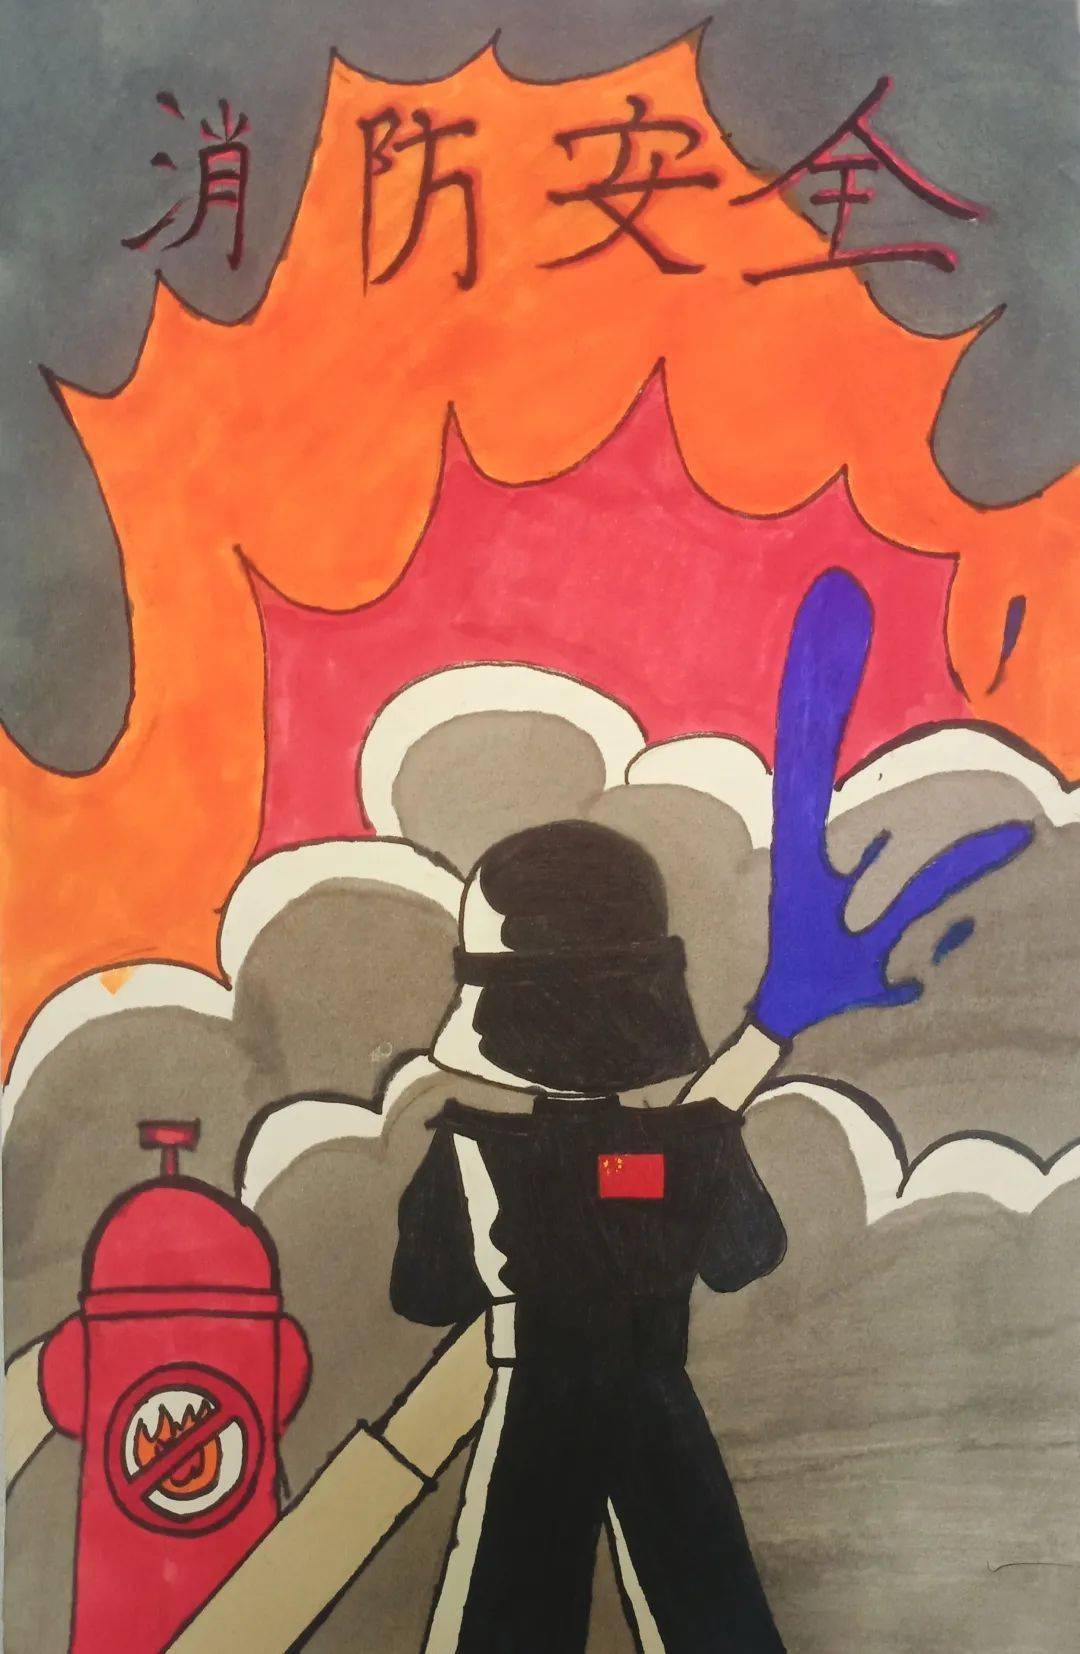 安全教育|惠州光正"119"消防安全宣传绘画作品大赏!